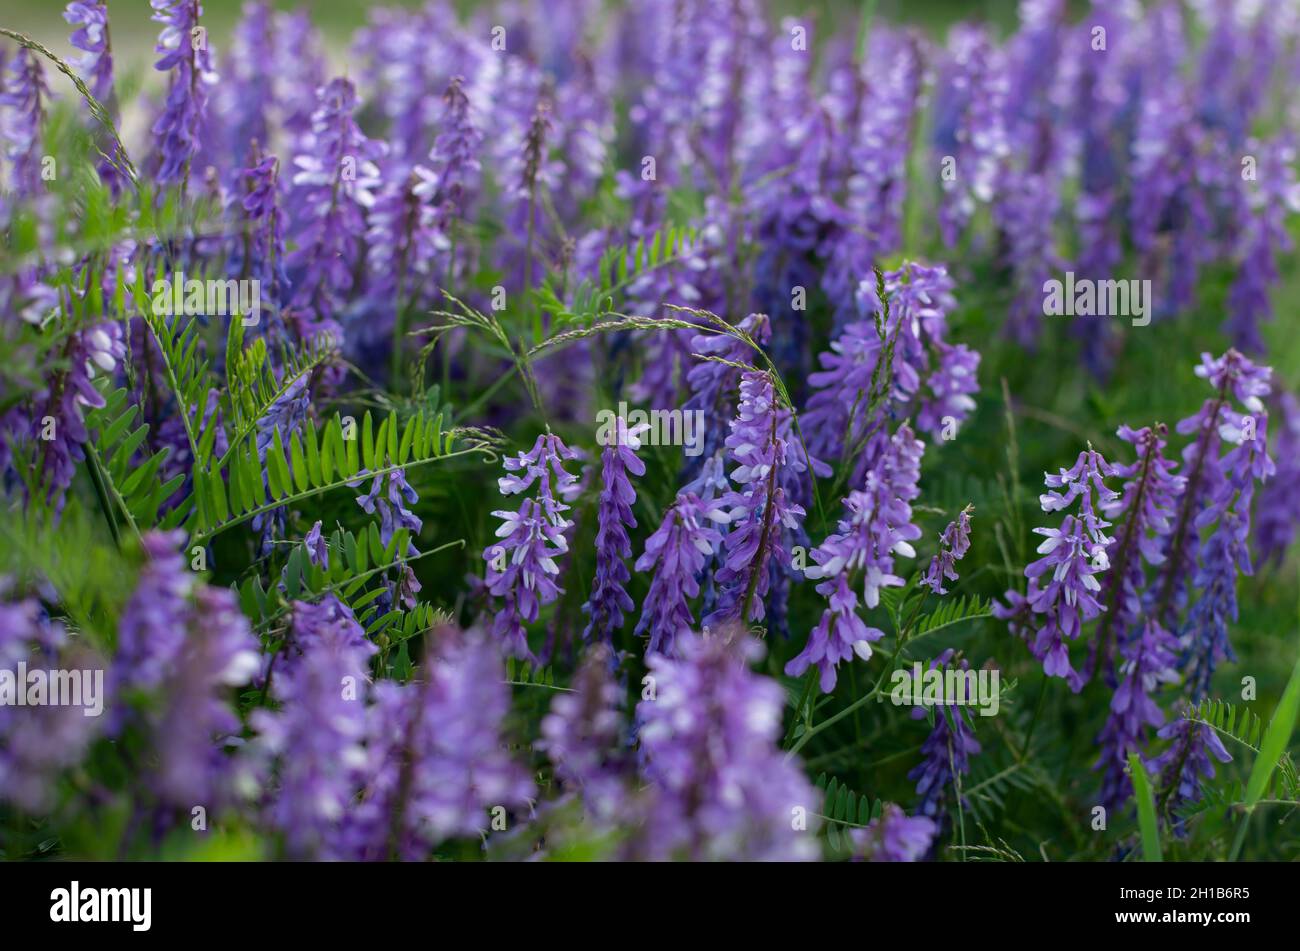 La plante de pois de souris fleurit avec des fleurs violettes dans le champ. Combinaison de violet et de vert. Banque D'Images